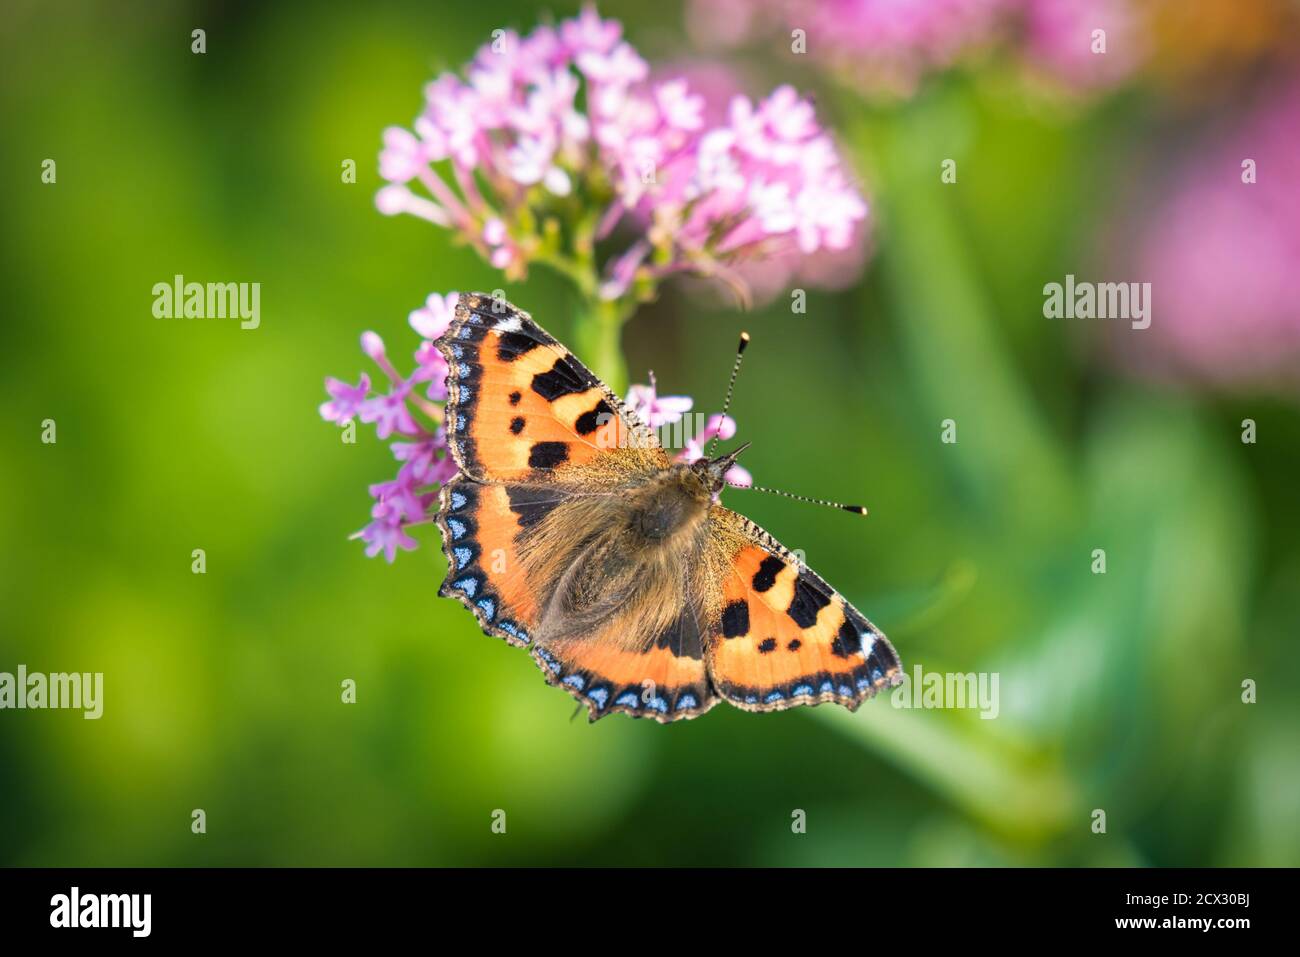 Una pequeña mariposa Tortoiseshell que se alimenta de néctar de flores, que se tomó a finales del verano en Irlanda Foto de stock